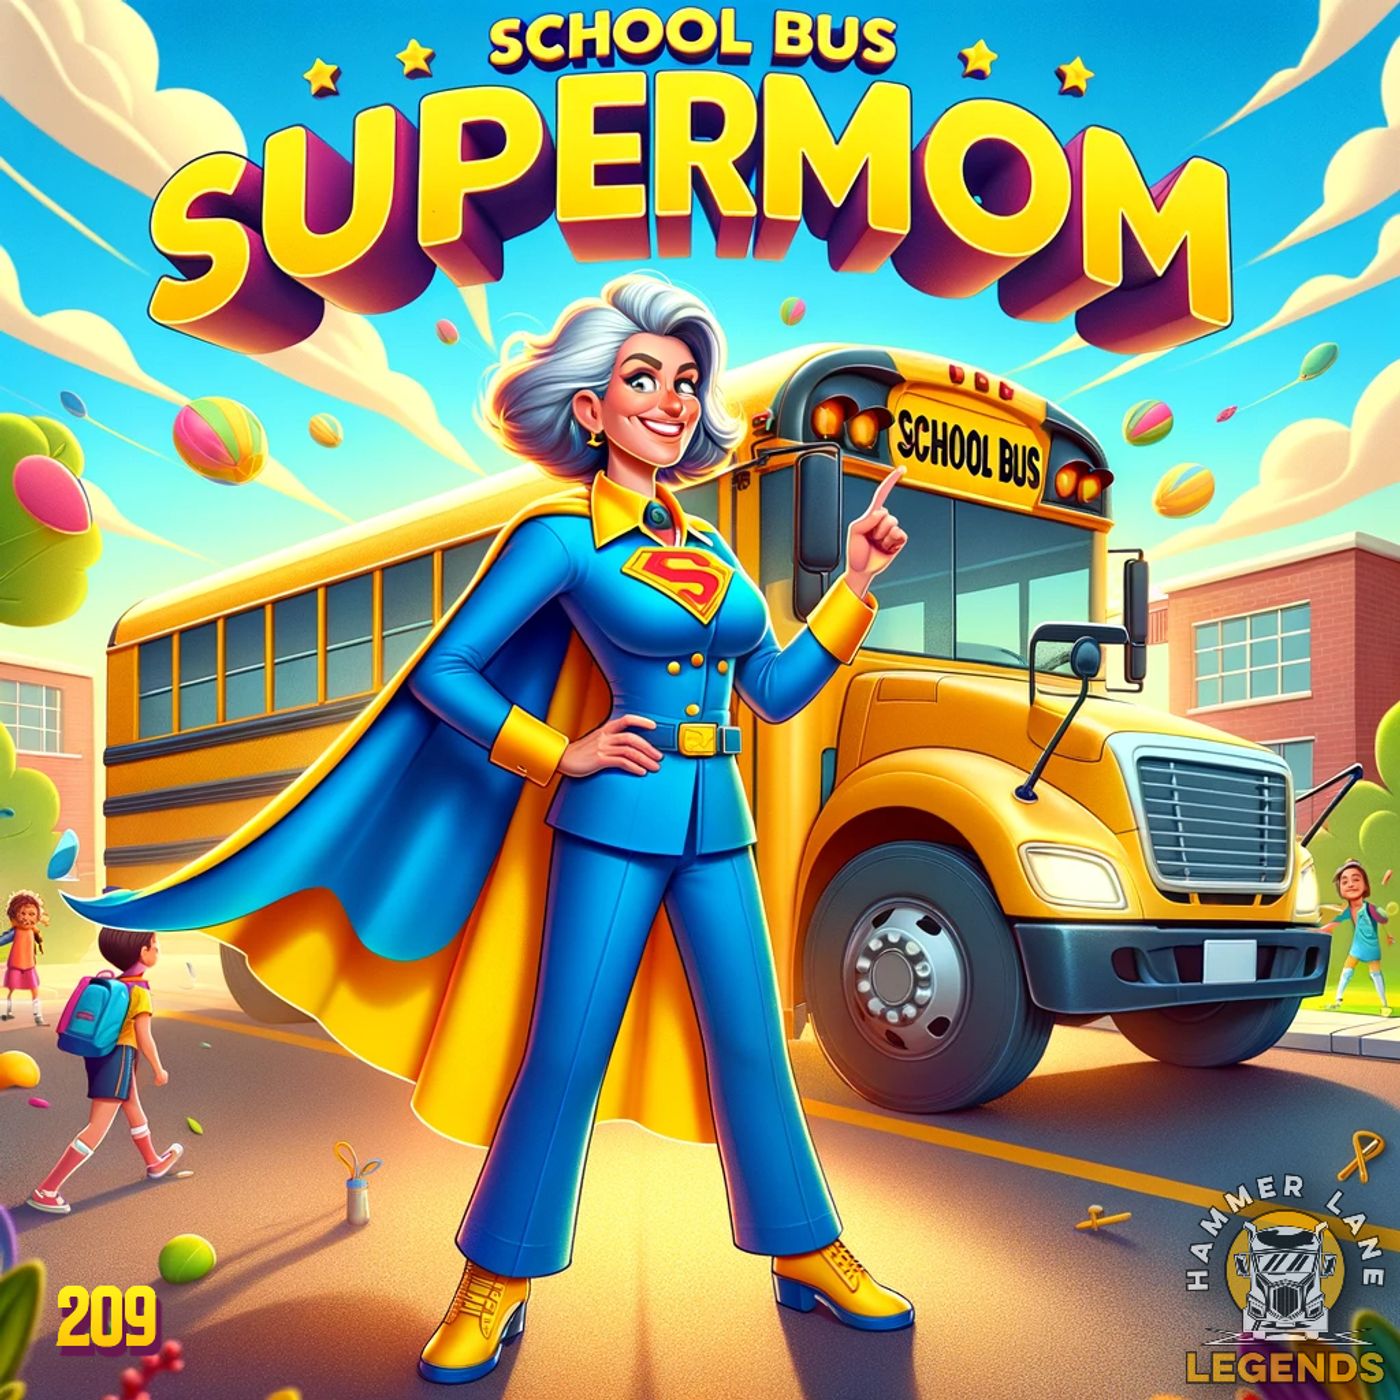 209: School Bus Supermom